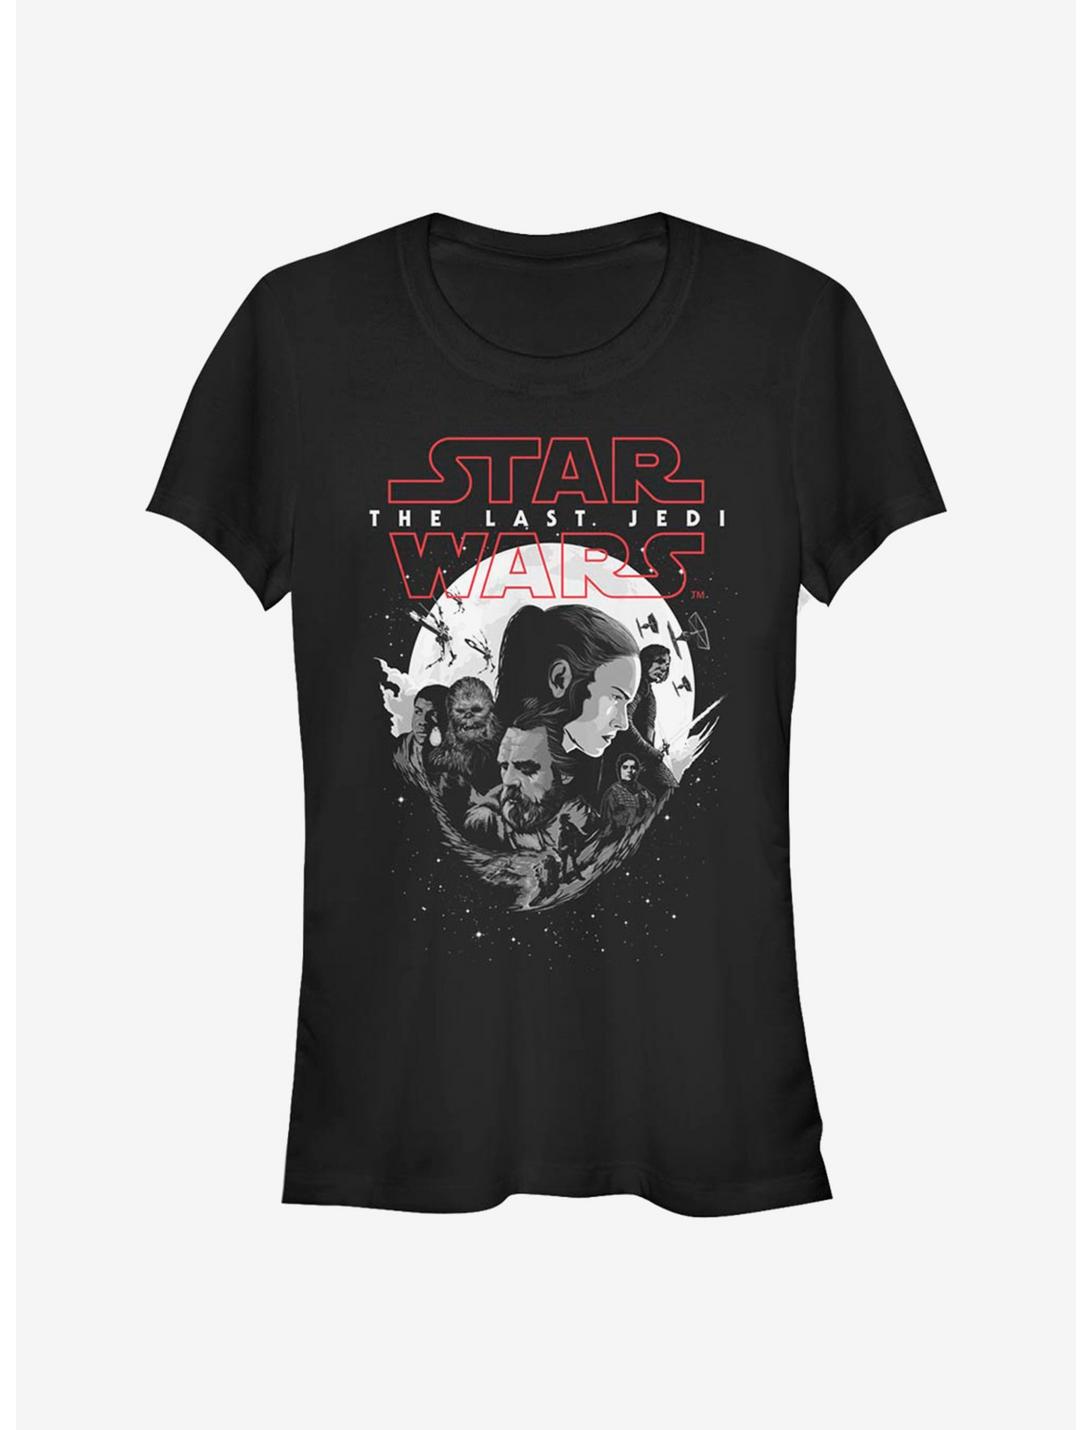 Star Wars: The Last Jedi Last Wars Girls T-Shirt, BLACK, hi-res